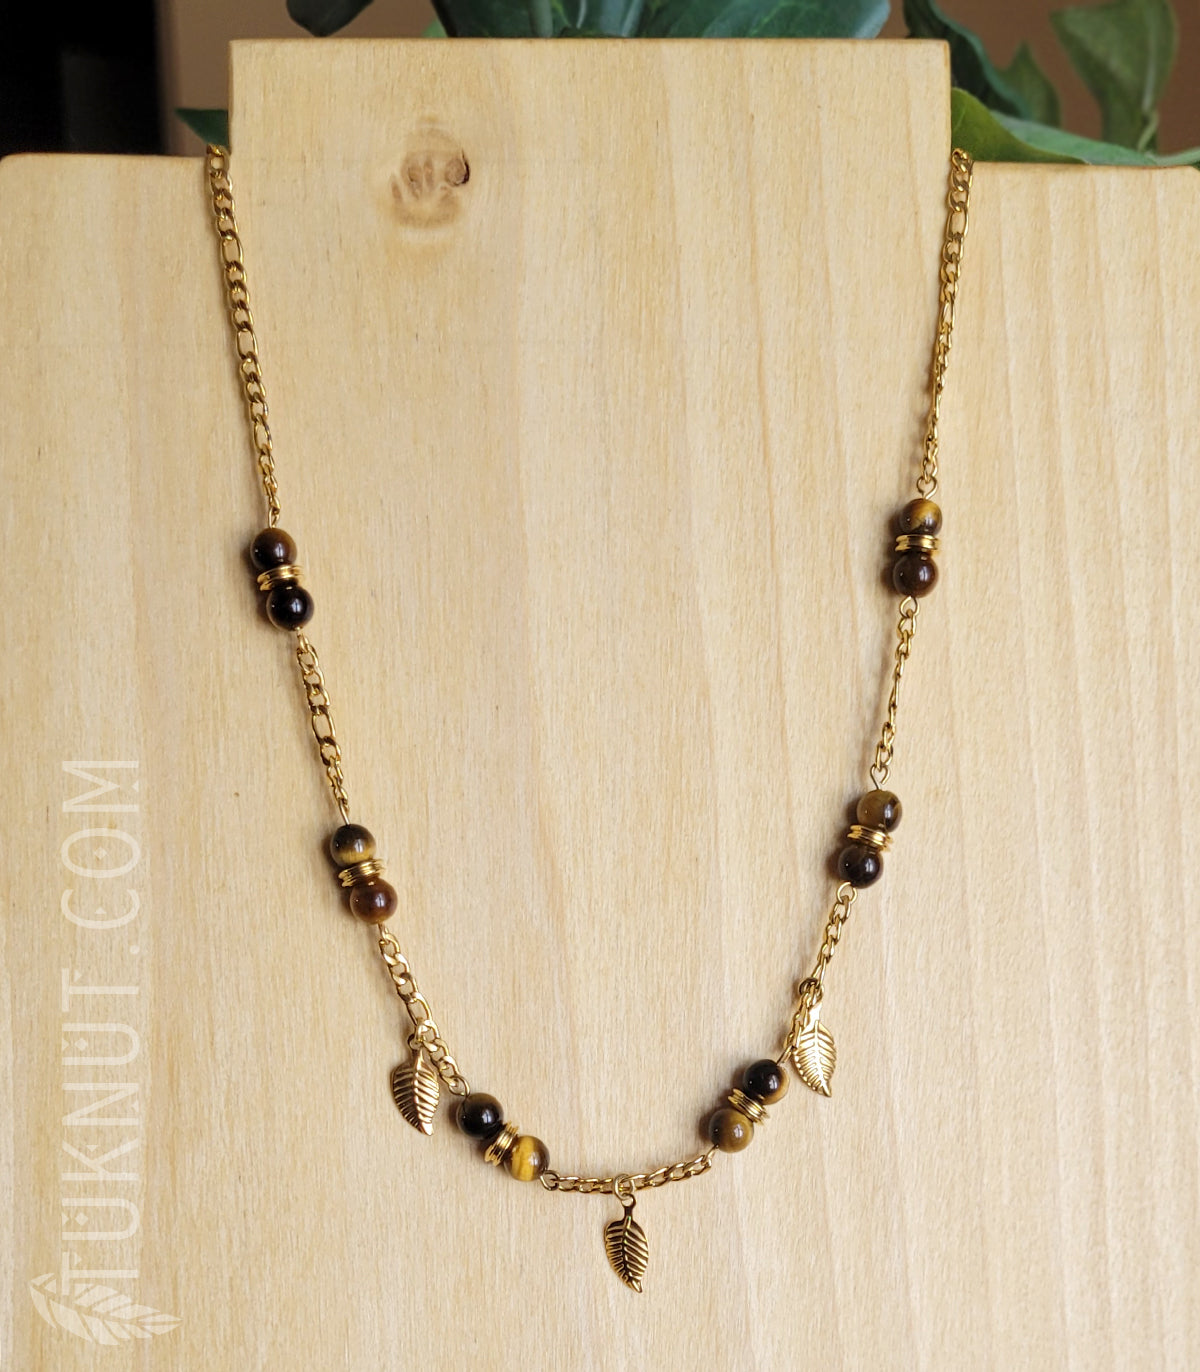 Collier d'inspiration autochtone avec pendentifs (feuille) en acier inoxydable avec oeil de tigre (couleurs : brun et or) TUKNUT